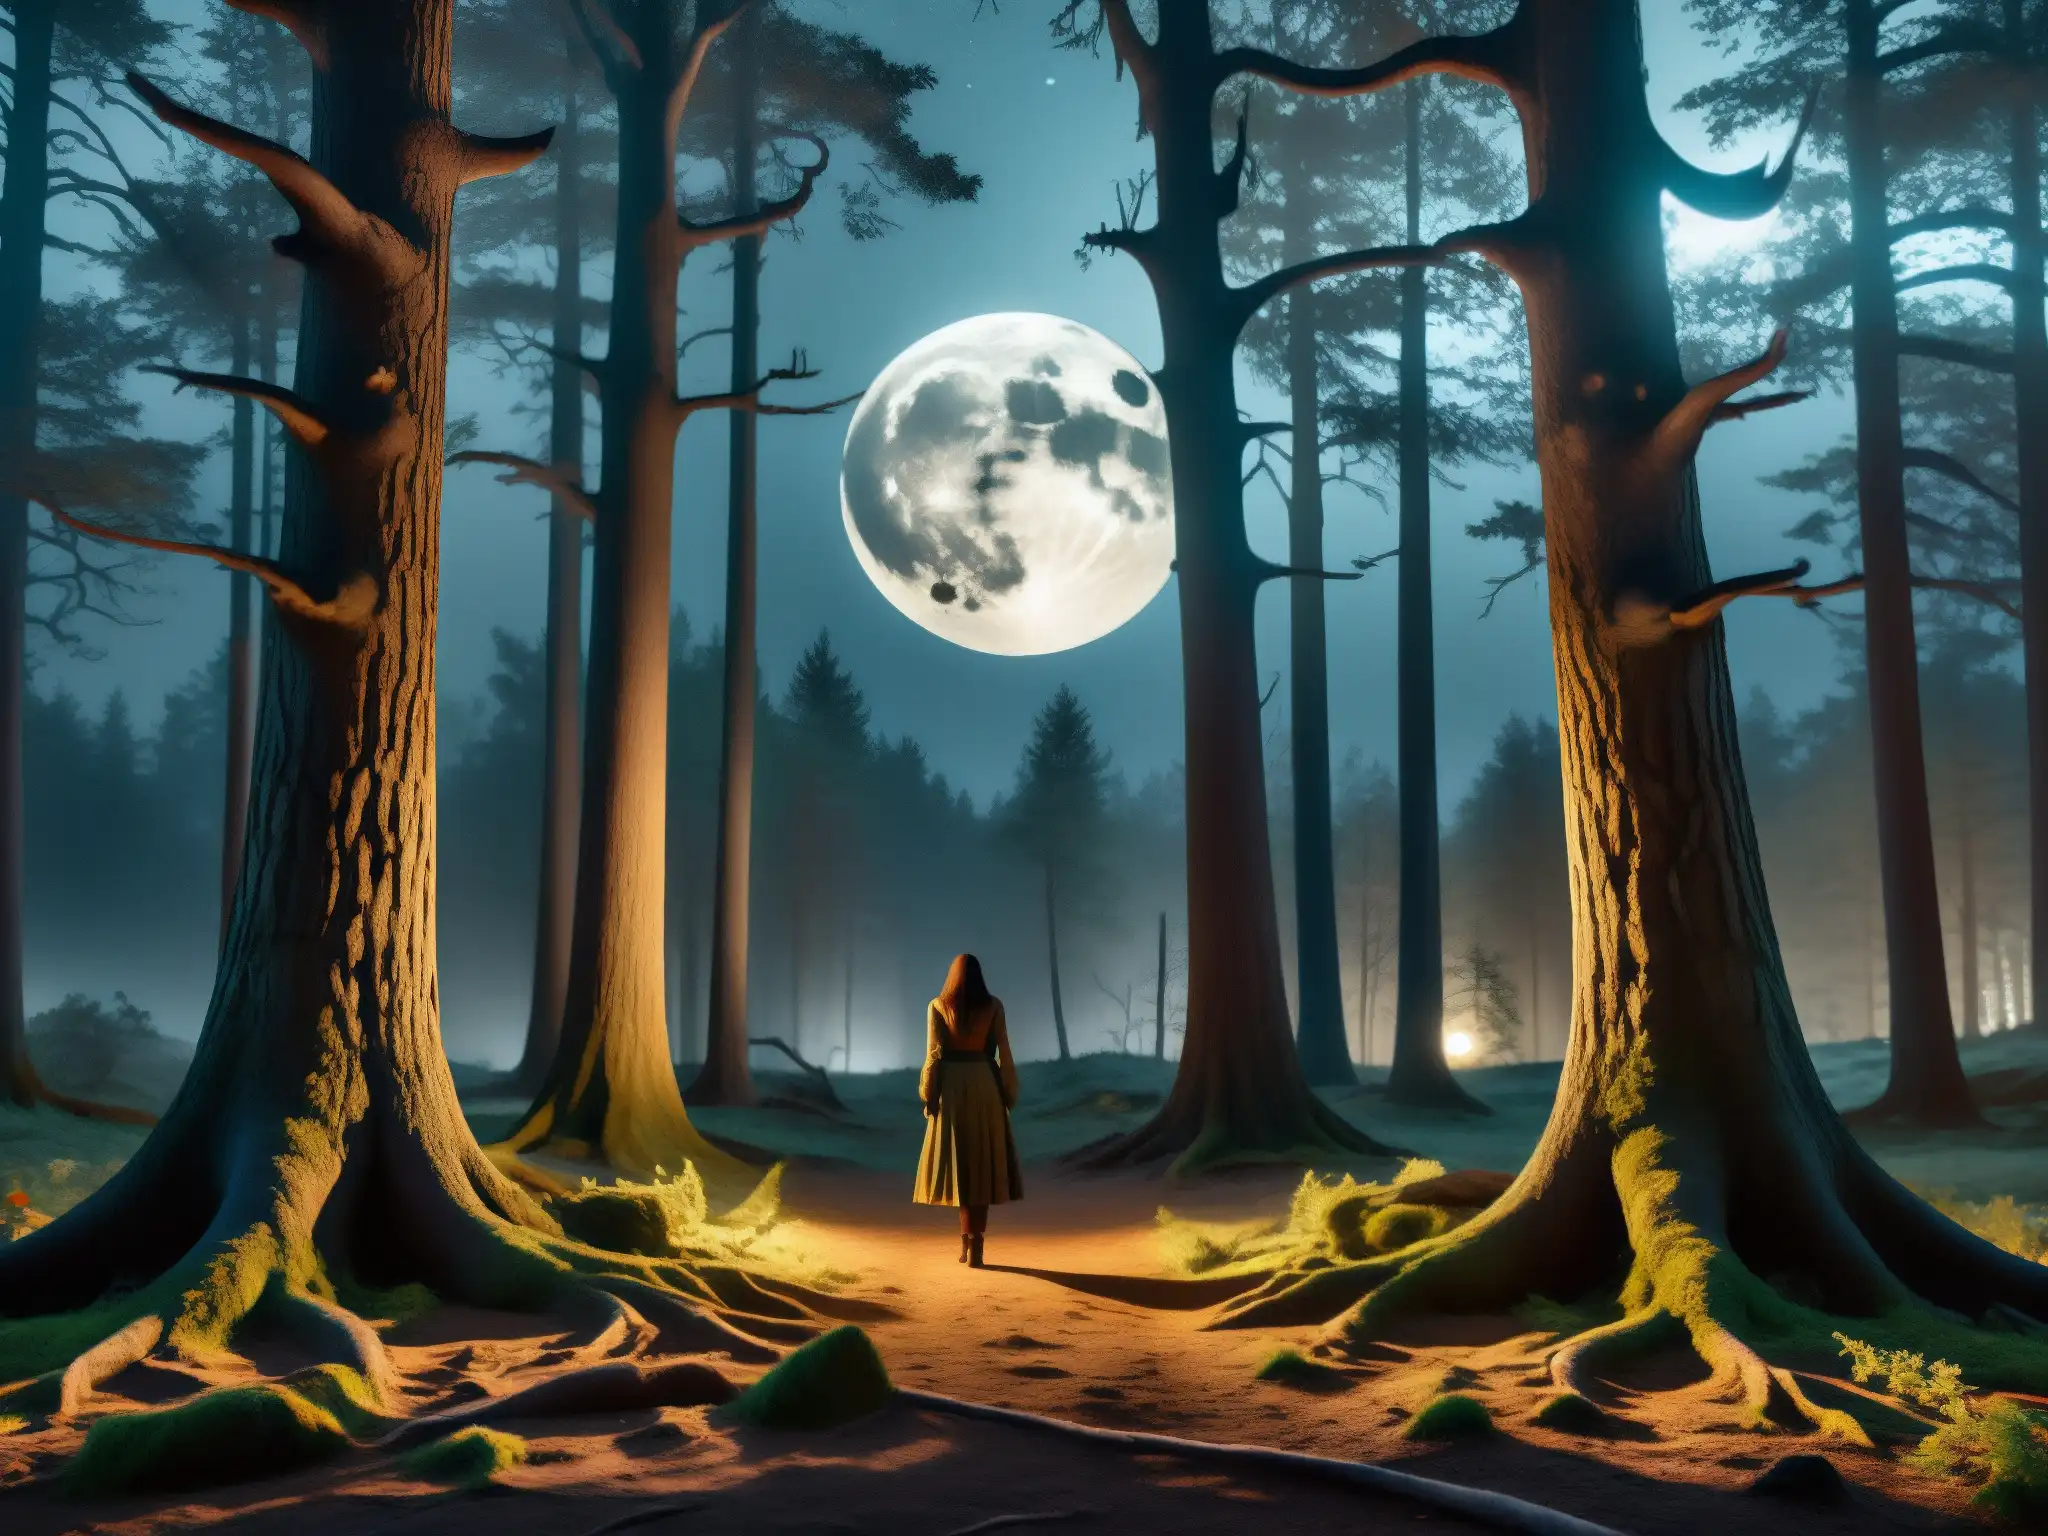 Un bosque nocturno iluminado por la luna, con árboles retorcidos y una atmósfera misteriosa y cautivadora